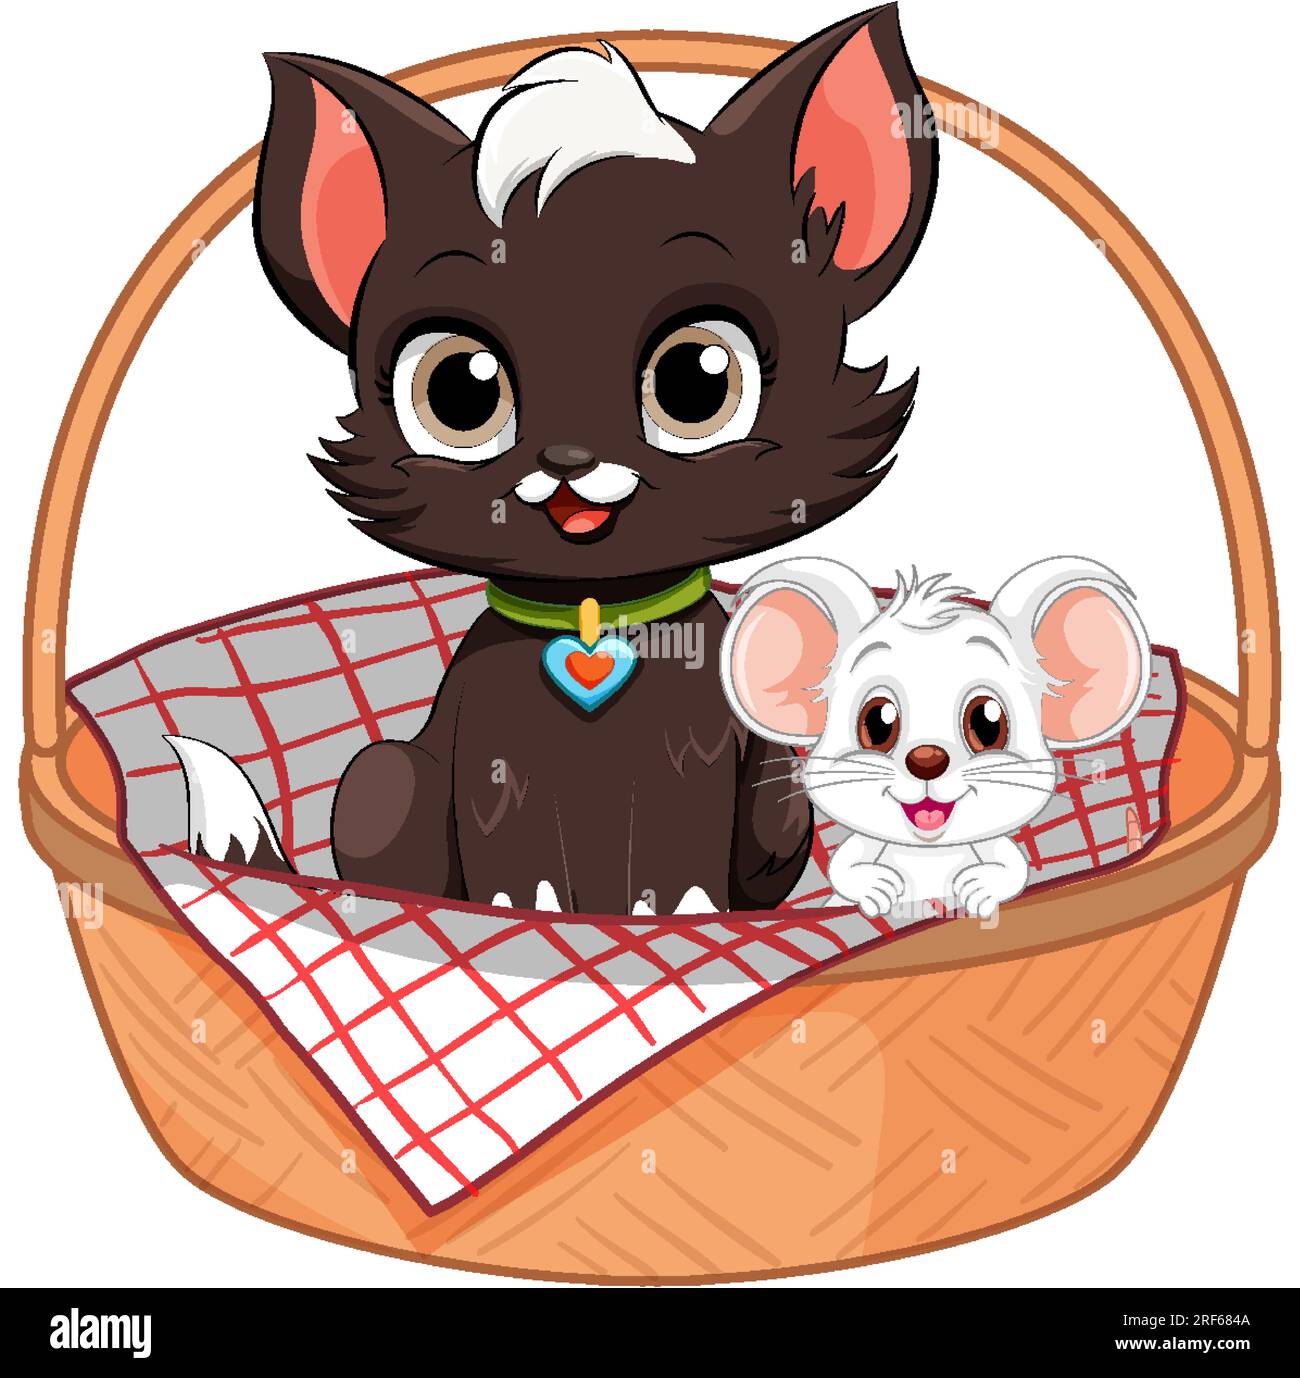 Deux personnages de dessins animés, un chat et une souris, sont assis dans un panier ensemble Illustration de Vecteur